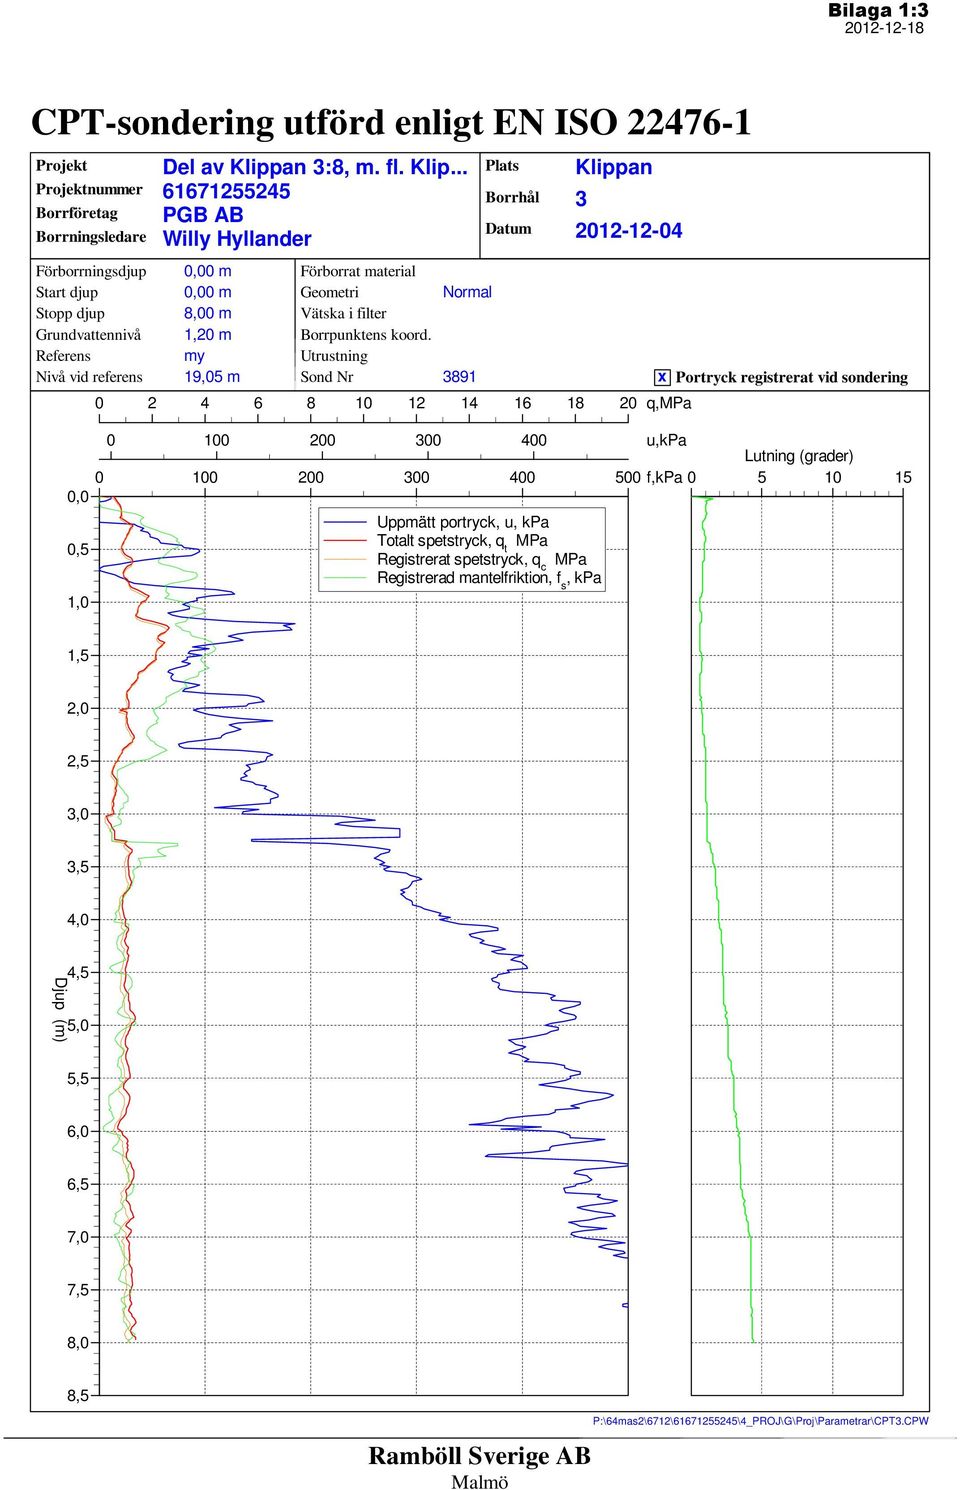 Utrustning Sond Nr Normal Plats Borrhål Datum Klippan 3 2012-12-04 x Portryck registrerat vid sondering 0 100 200 300 400 u,kpa Lutning (grader) 0 100 200 300 400 500 f,kpa 0 5 10 15 0,0 0,5 1,0 3891